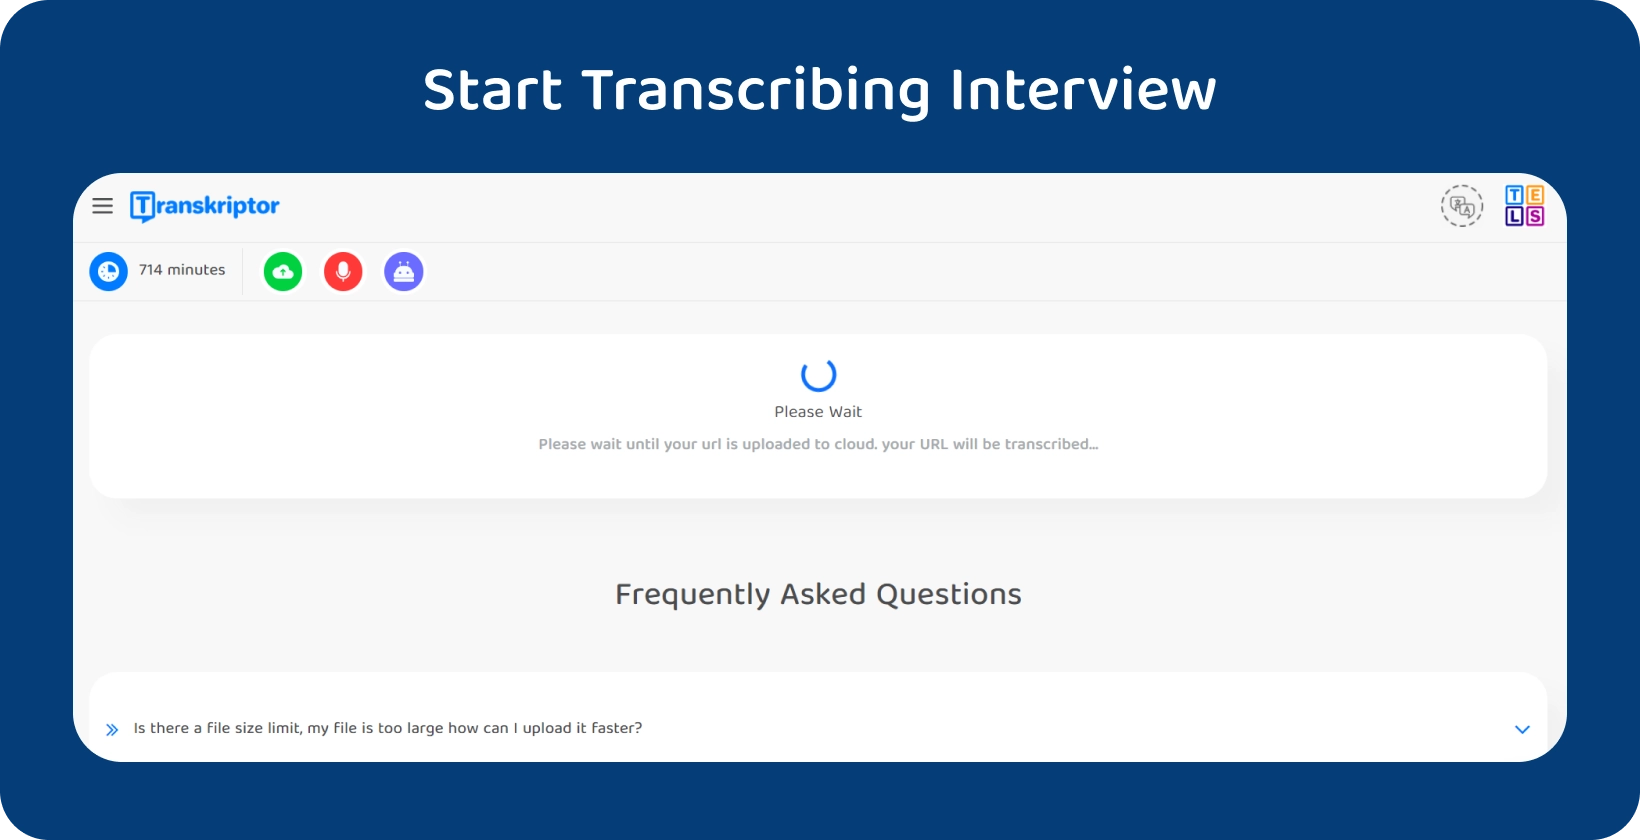 Inicie a transcrição da dissertação com Transkriptor, mostrando uma entrevista de 714 minutos aguardando processamento.